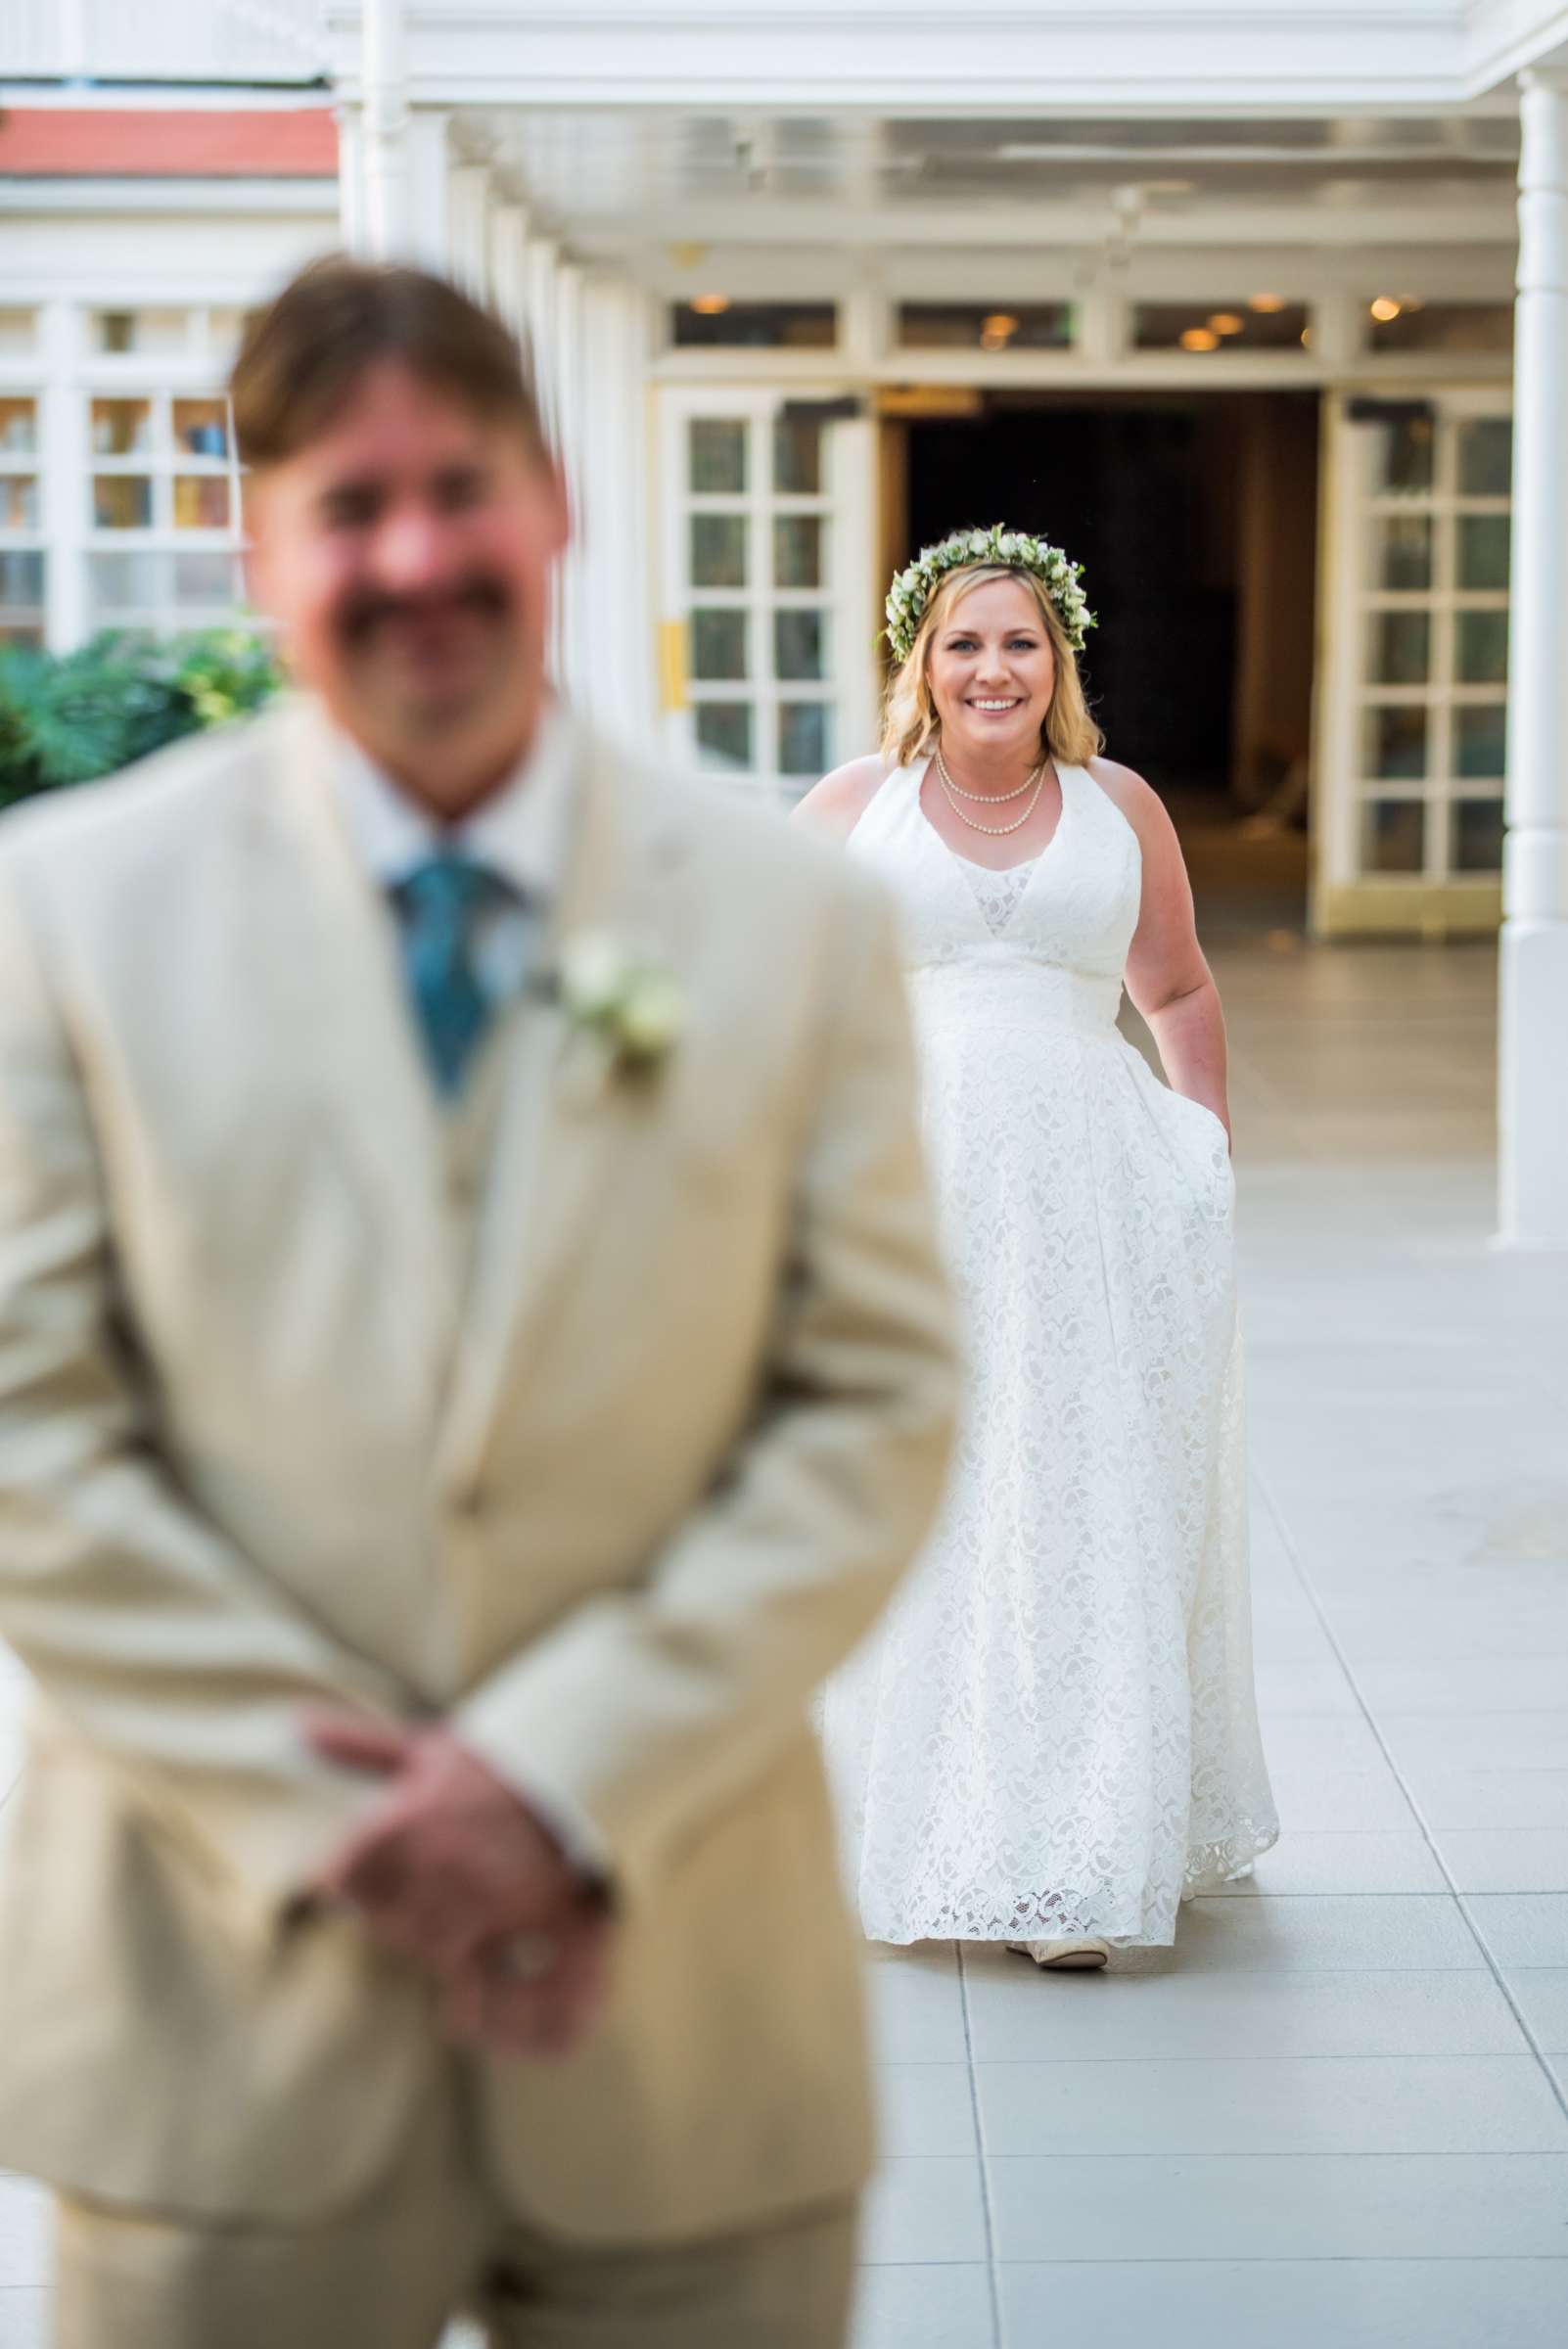 Hotel Del Coronado Wedding, Danielle and Glenn Wedding Photo #15 by True Photography